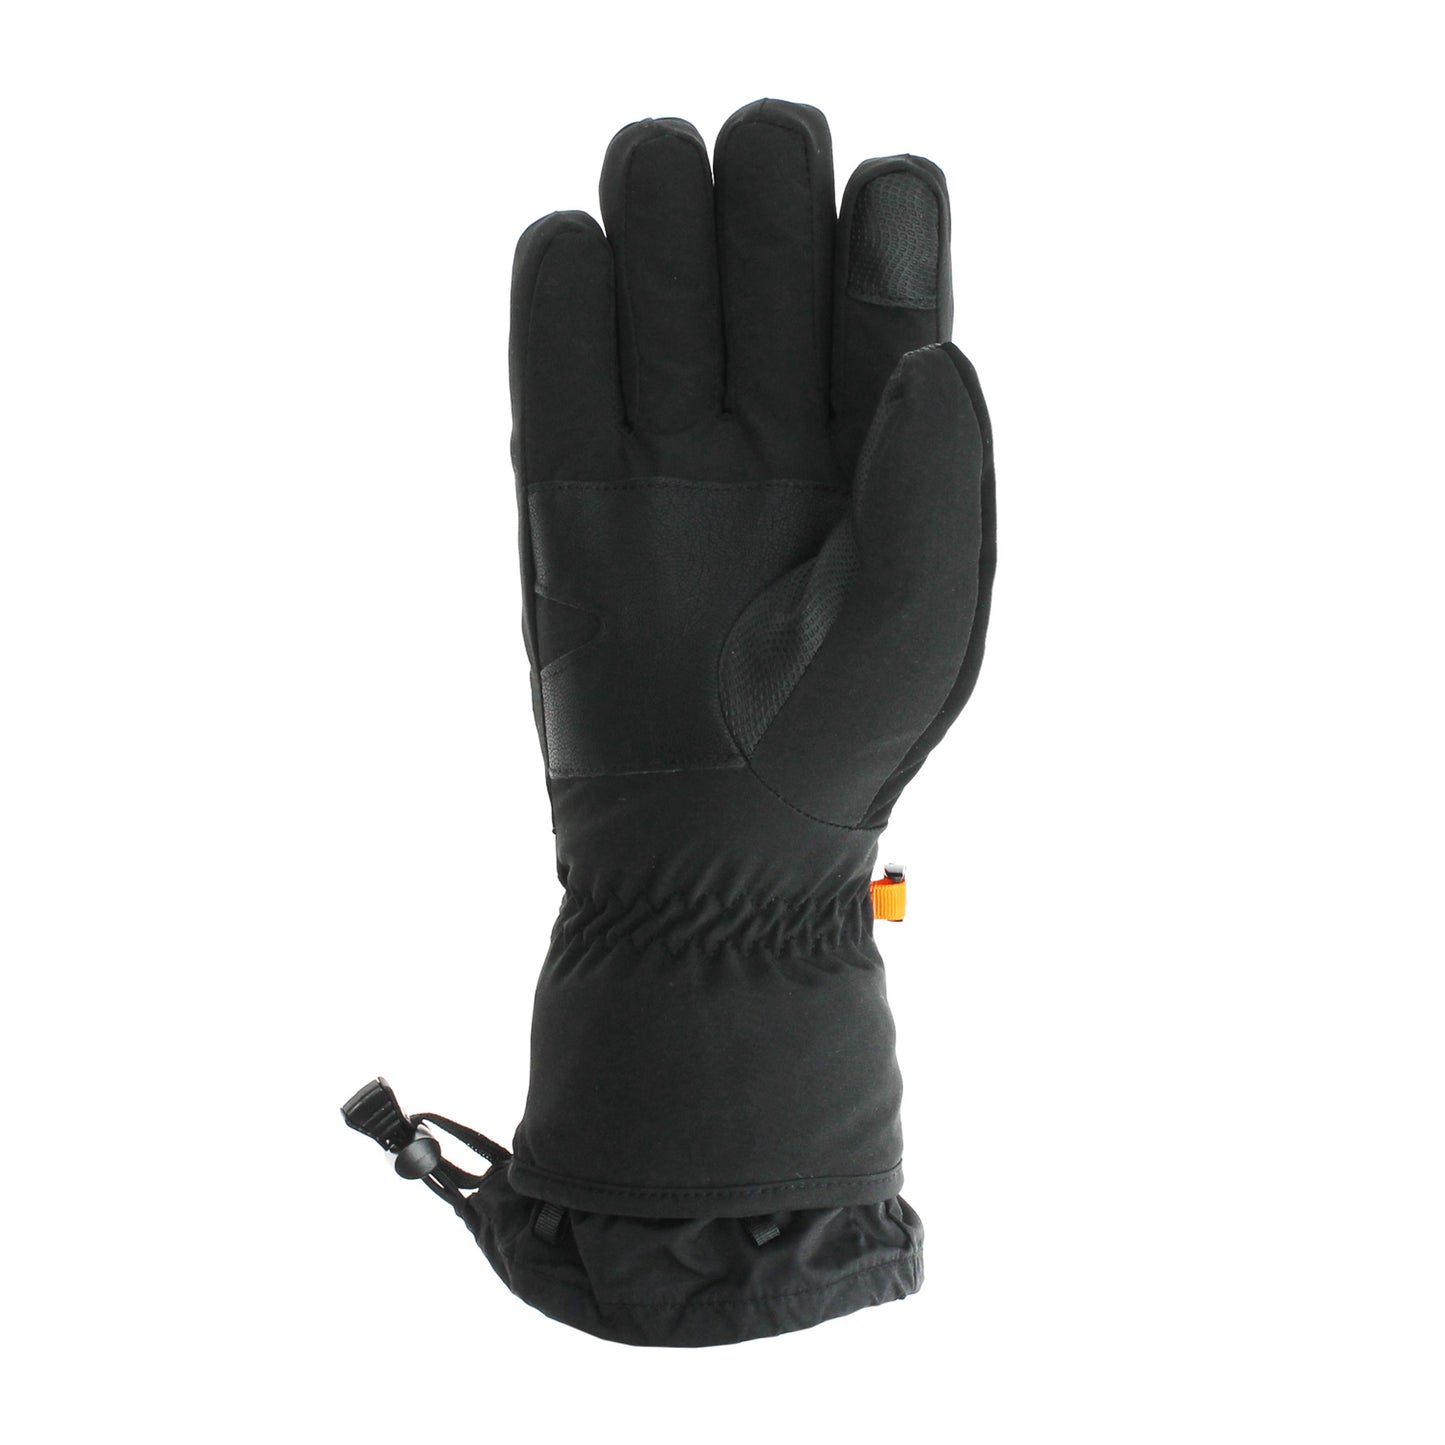 Style de gants de ski CTR Plus : 1510